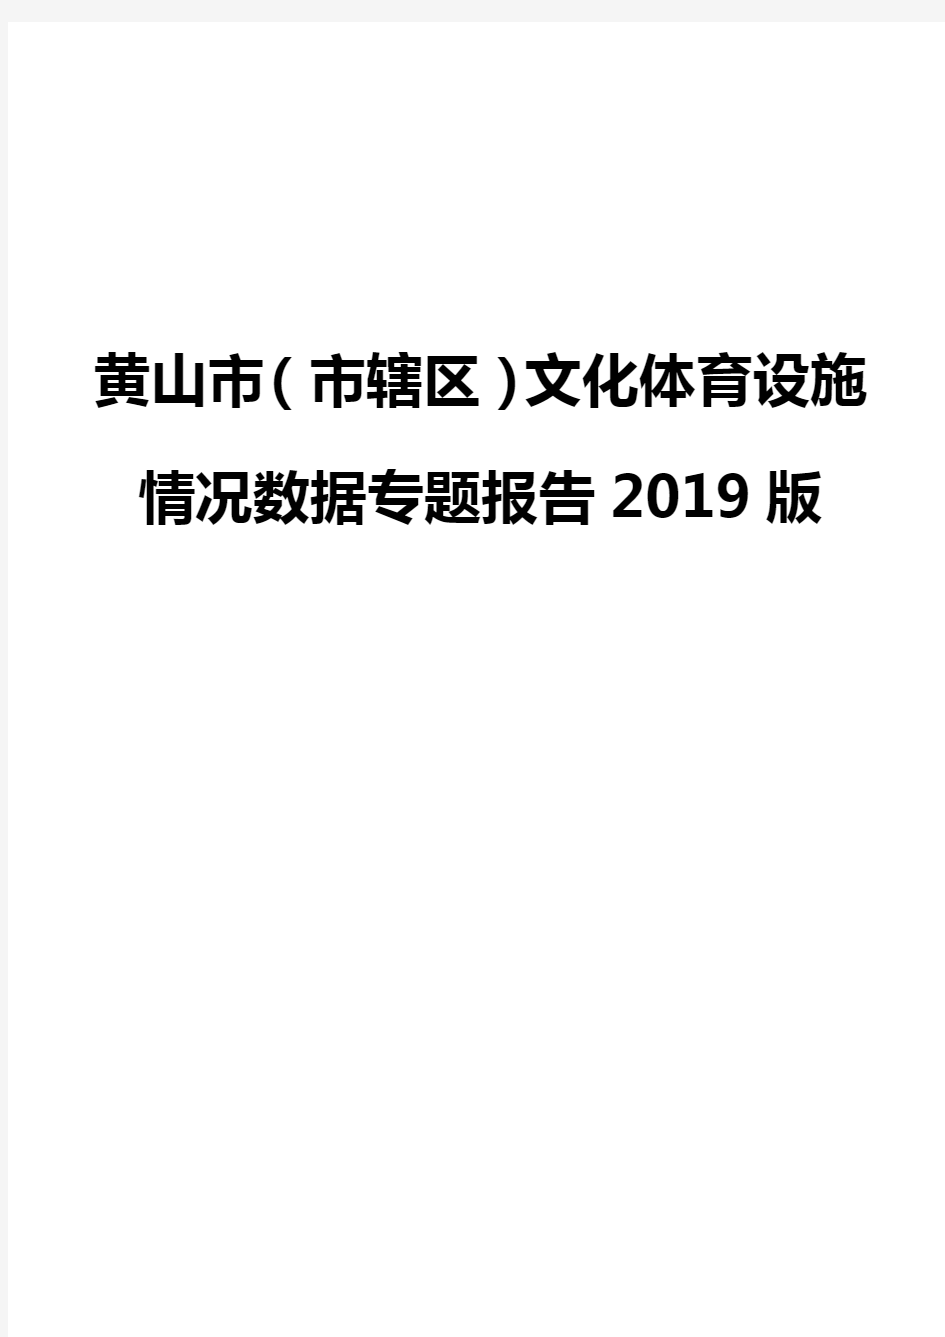 黄山市(市辖区)文化体育设施情况数据专题报告2019版